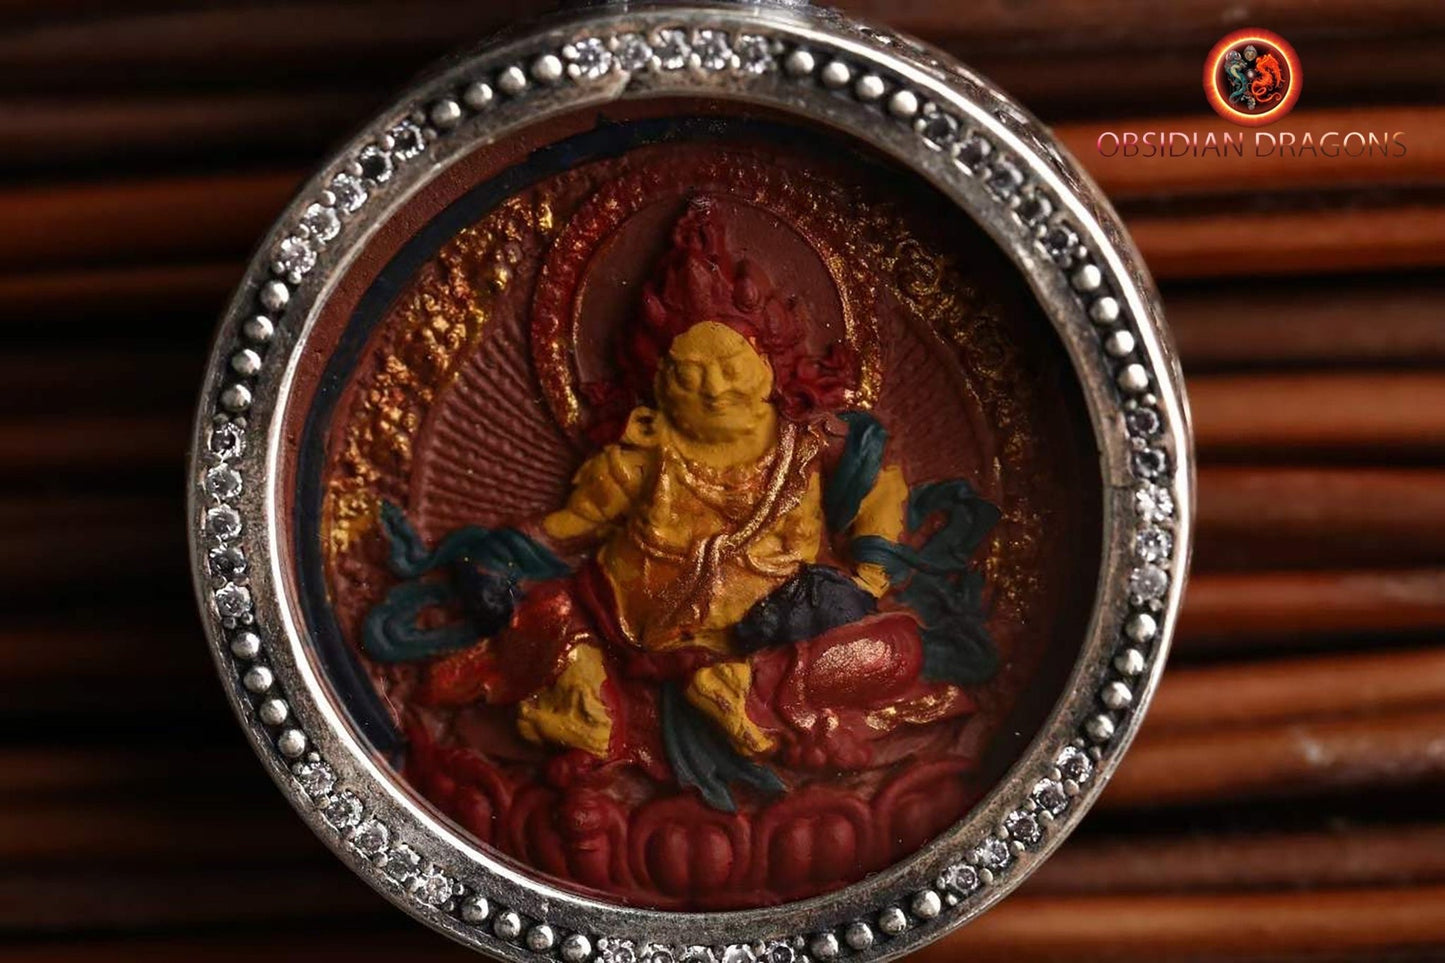 Pendentif bouddha tibétain, amulette tibétaine, tsa tsa en argile authentique dans son reliquaire en argent 925. Déité de la richesse Jambhala - obsidian dragon